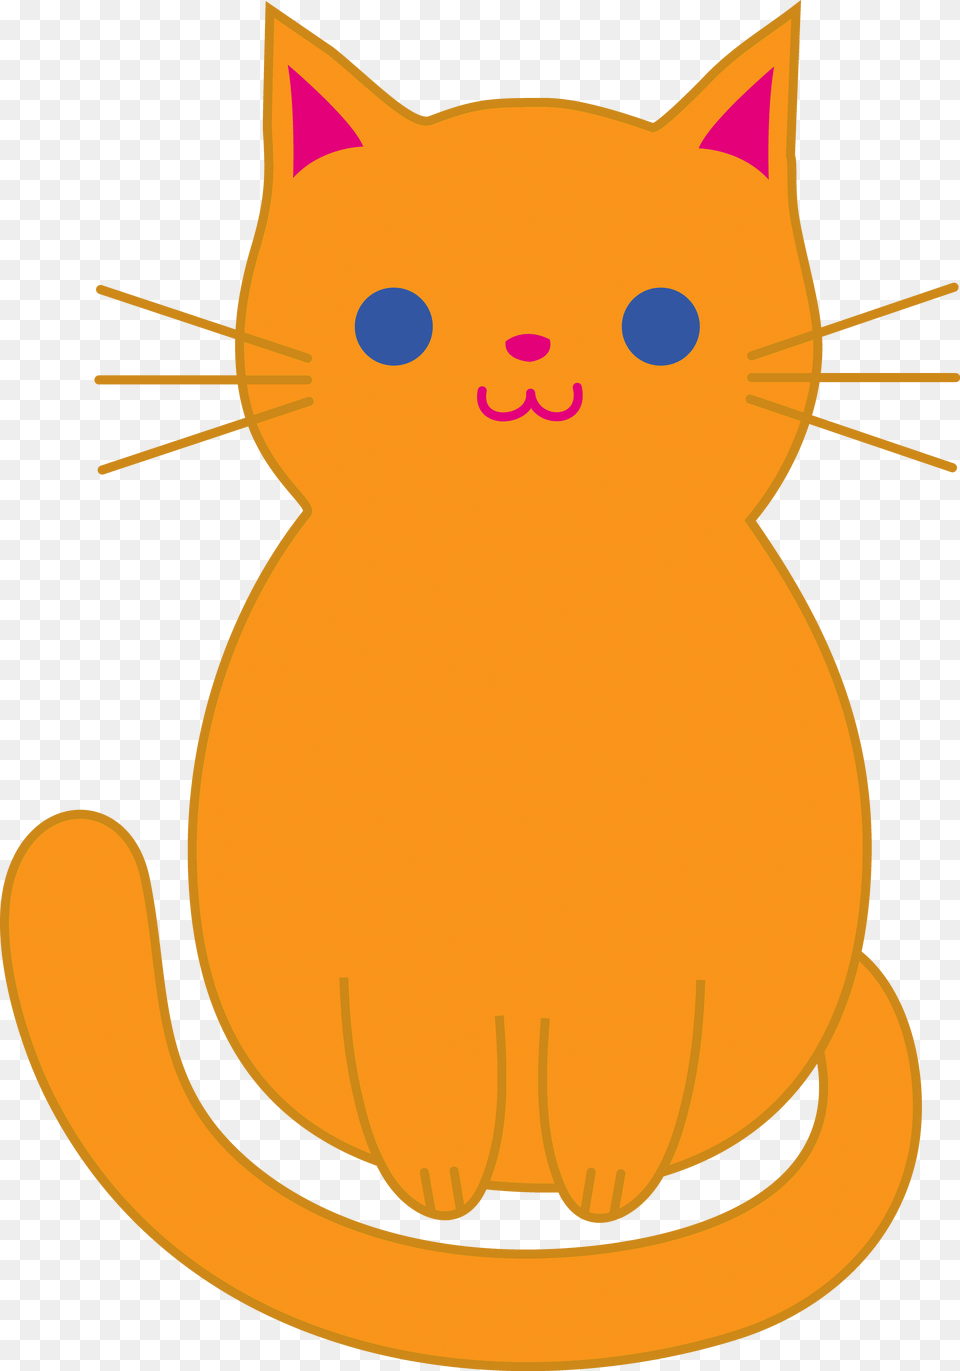 Cute Kitten Clipart Cute Yellow Cat Cartoon, Animal, Mammal, Pet, Baby Free Png